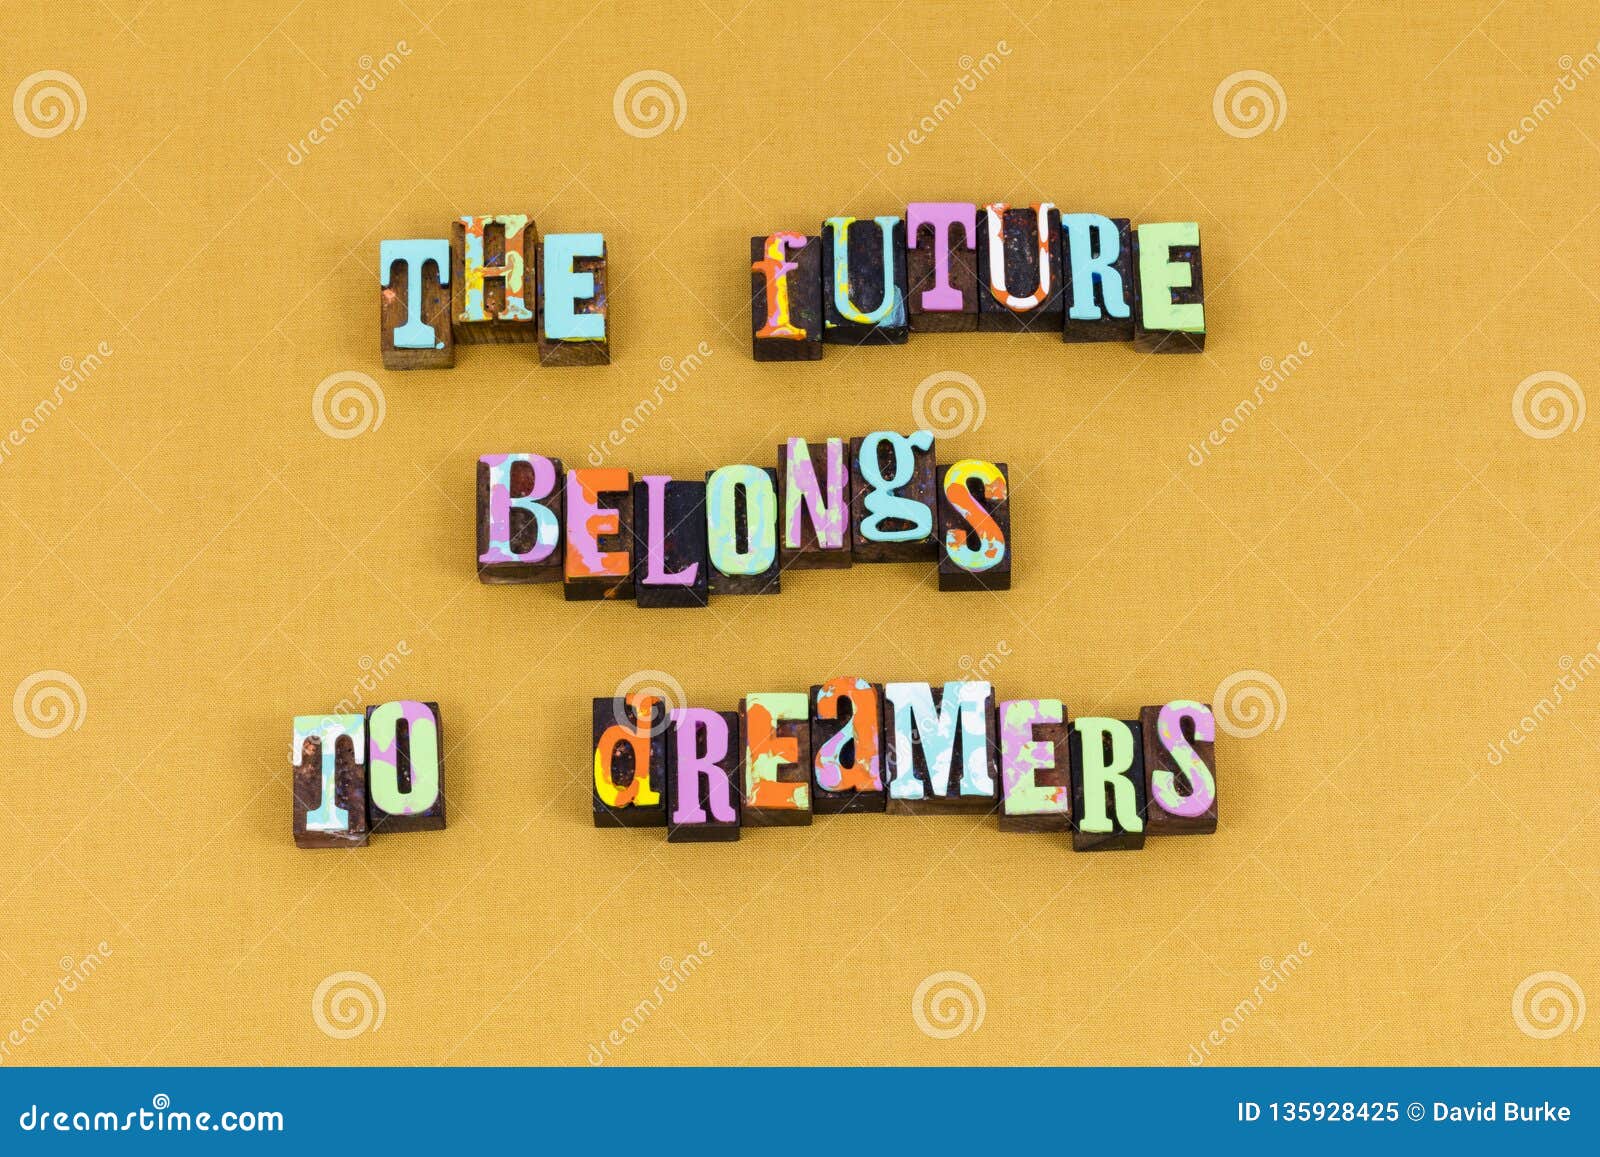 future belongs dream idea learning typography